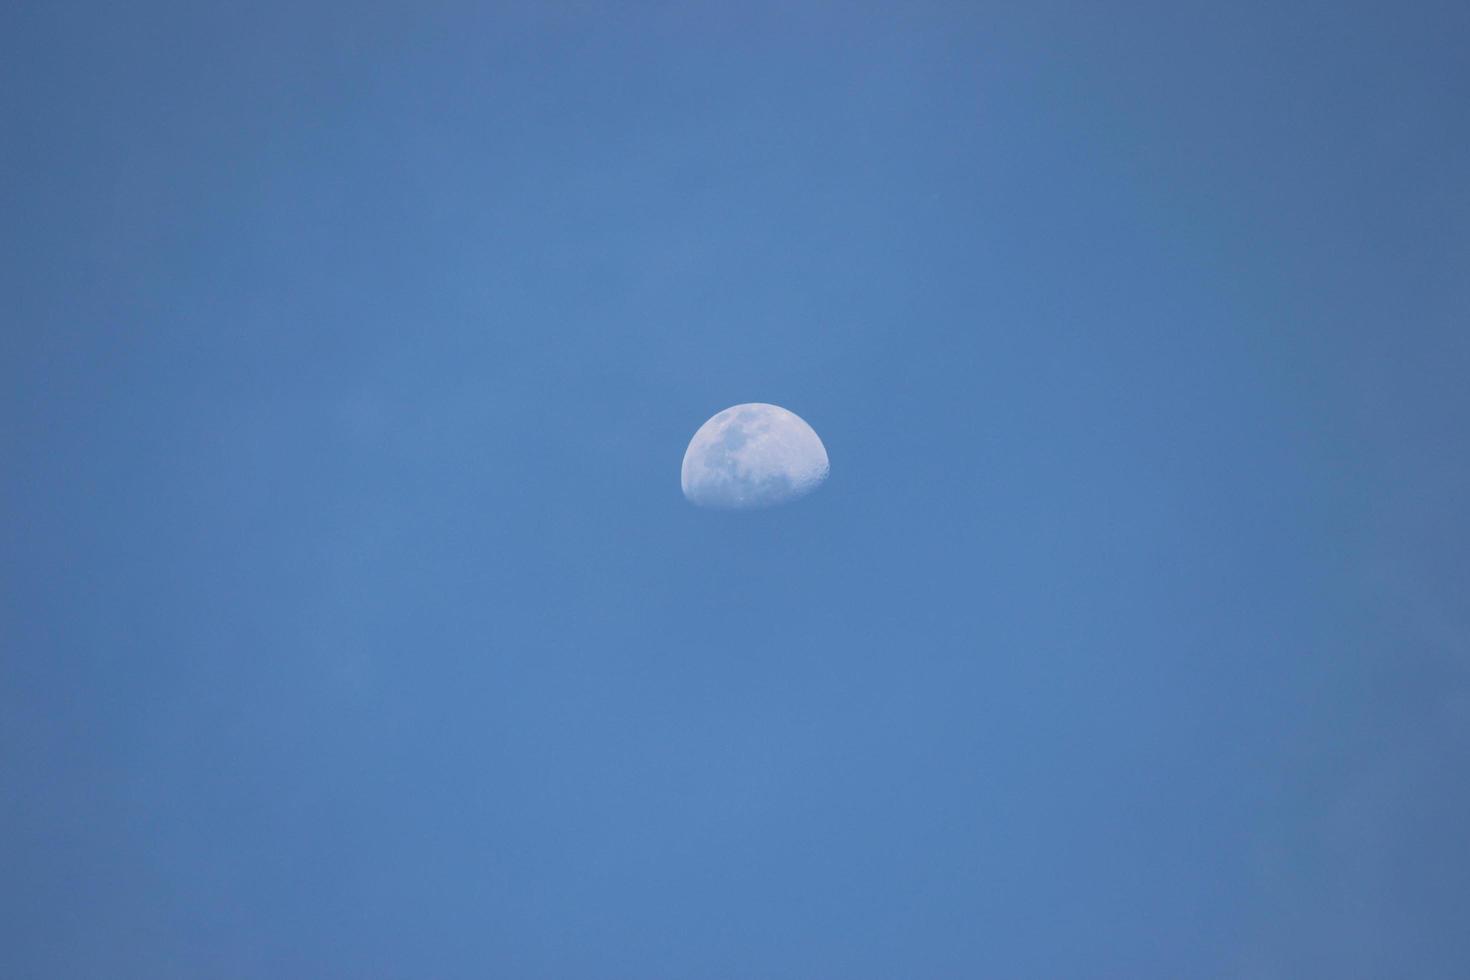 mezza luna sul cielo blu alla luce del giorno foto